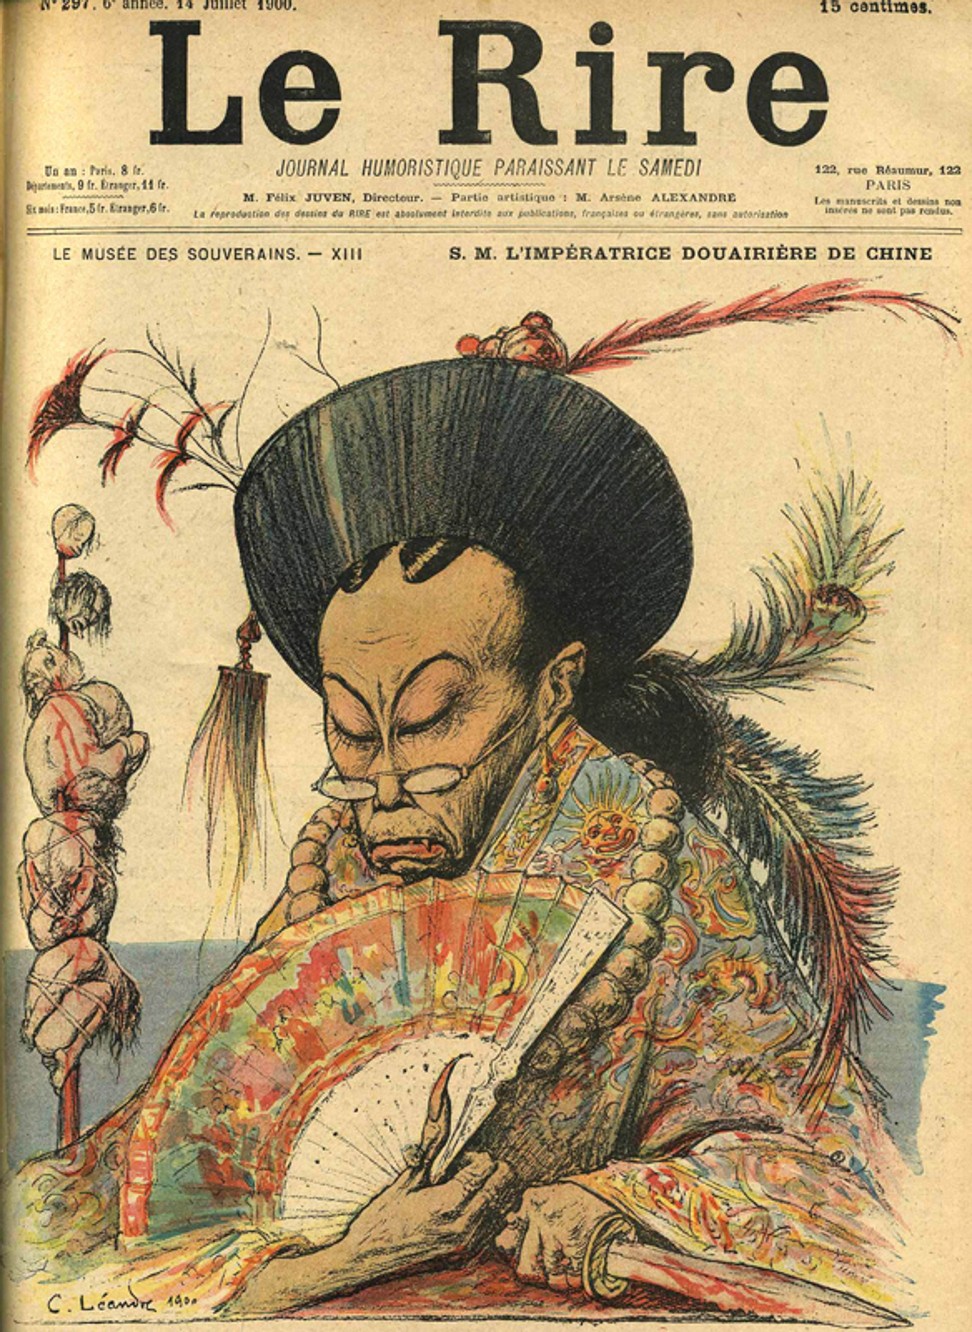 Цыси на обложке французского журнала в 1900 г.